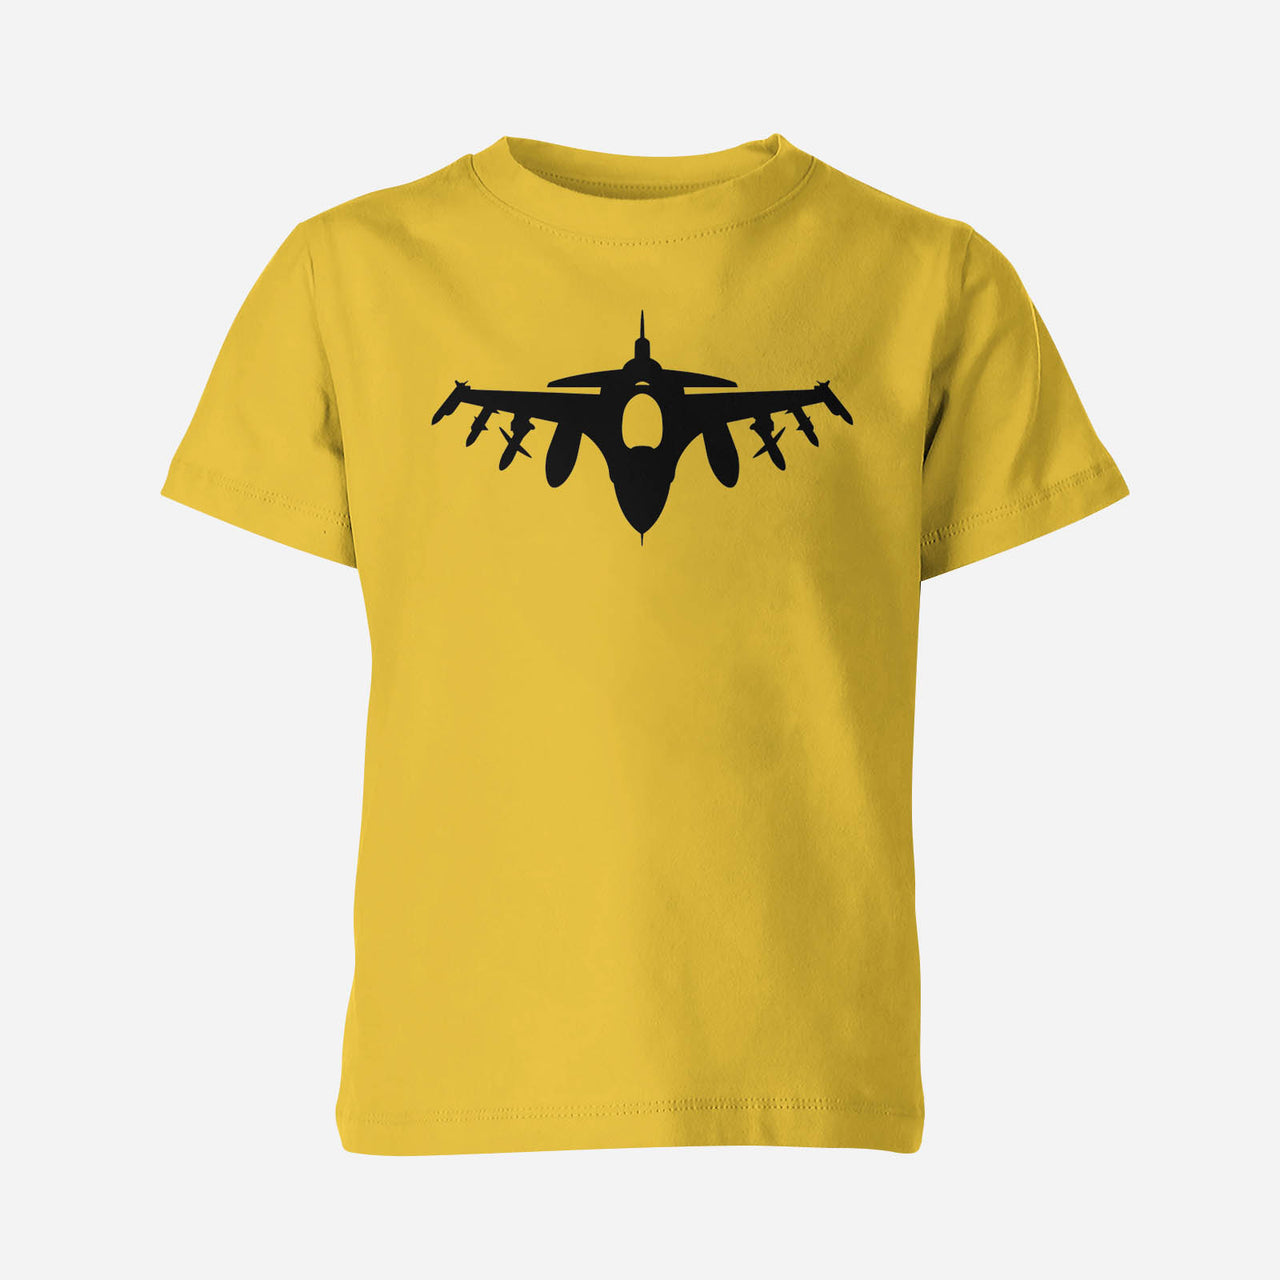 Fighting Falcon F16 Silhouette Designed Children T-Shirts